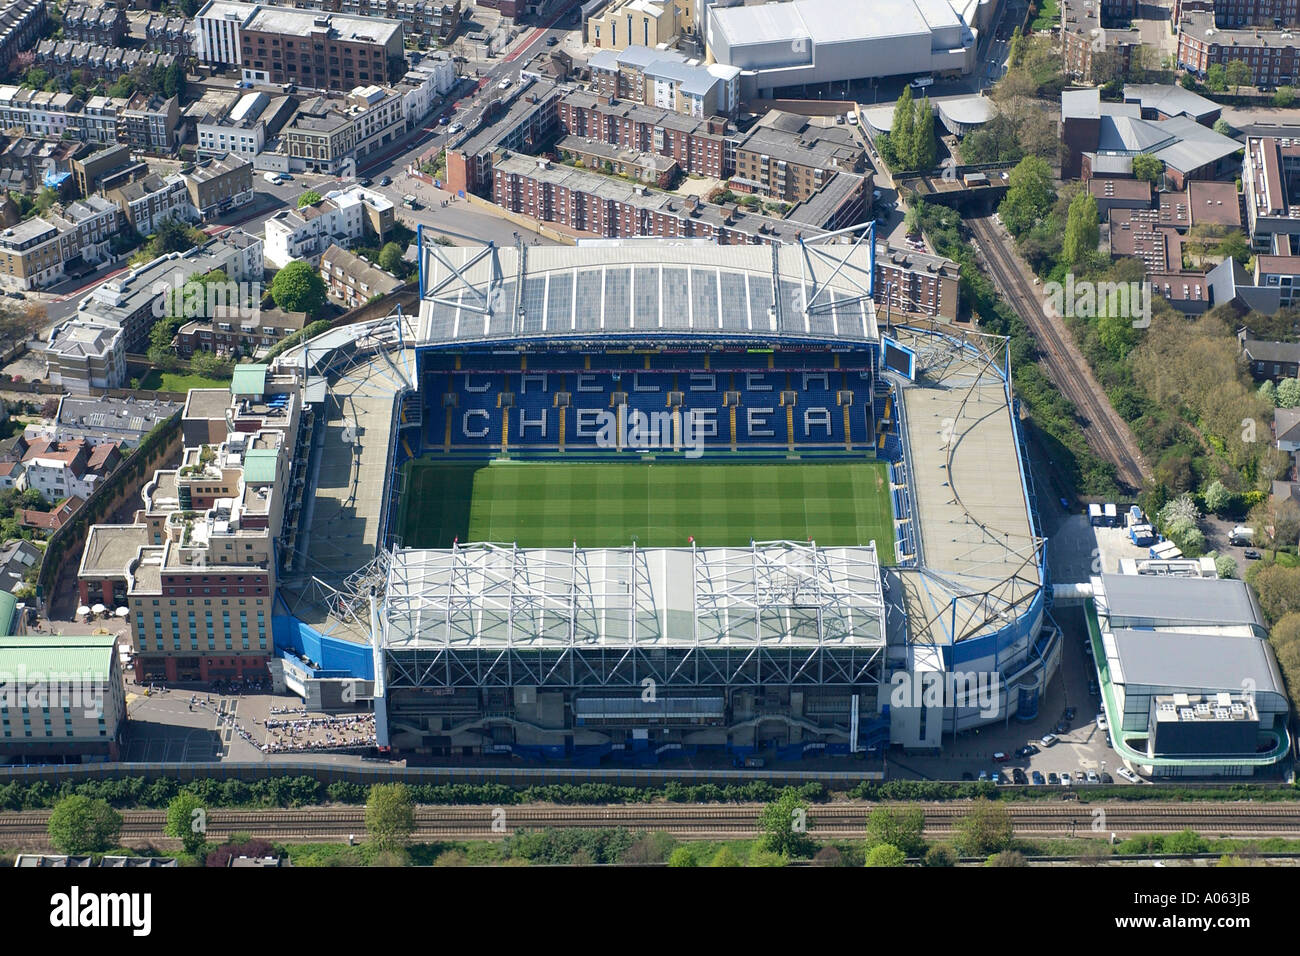 Vue aérienne de Chelsea Football Club à Londres, également connu sous le nom de stade de Stamford Bridge Accueil au blues ou les retraités Banque D'Images